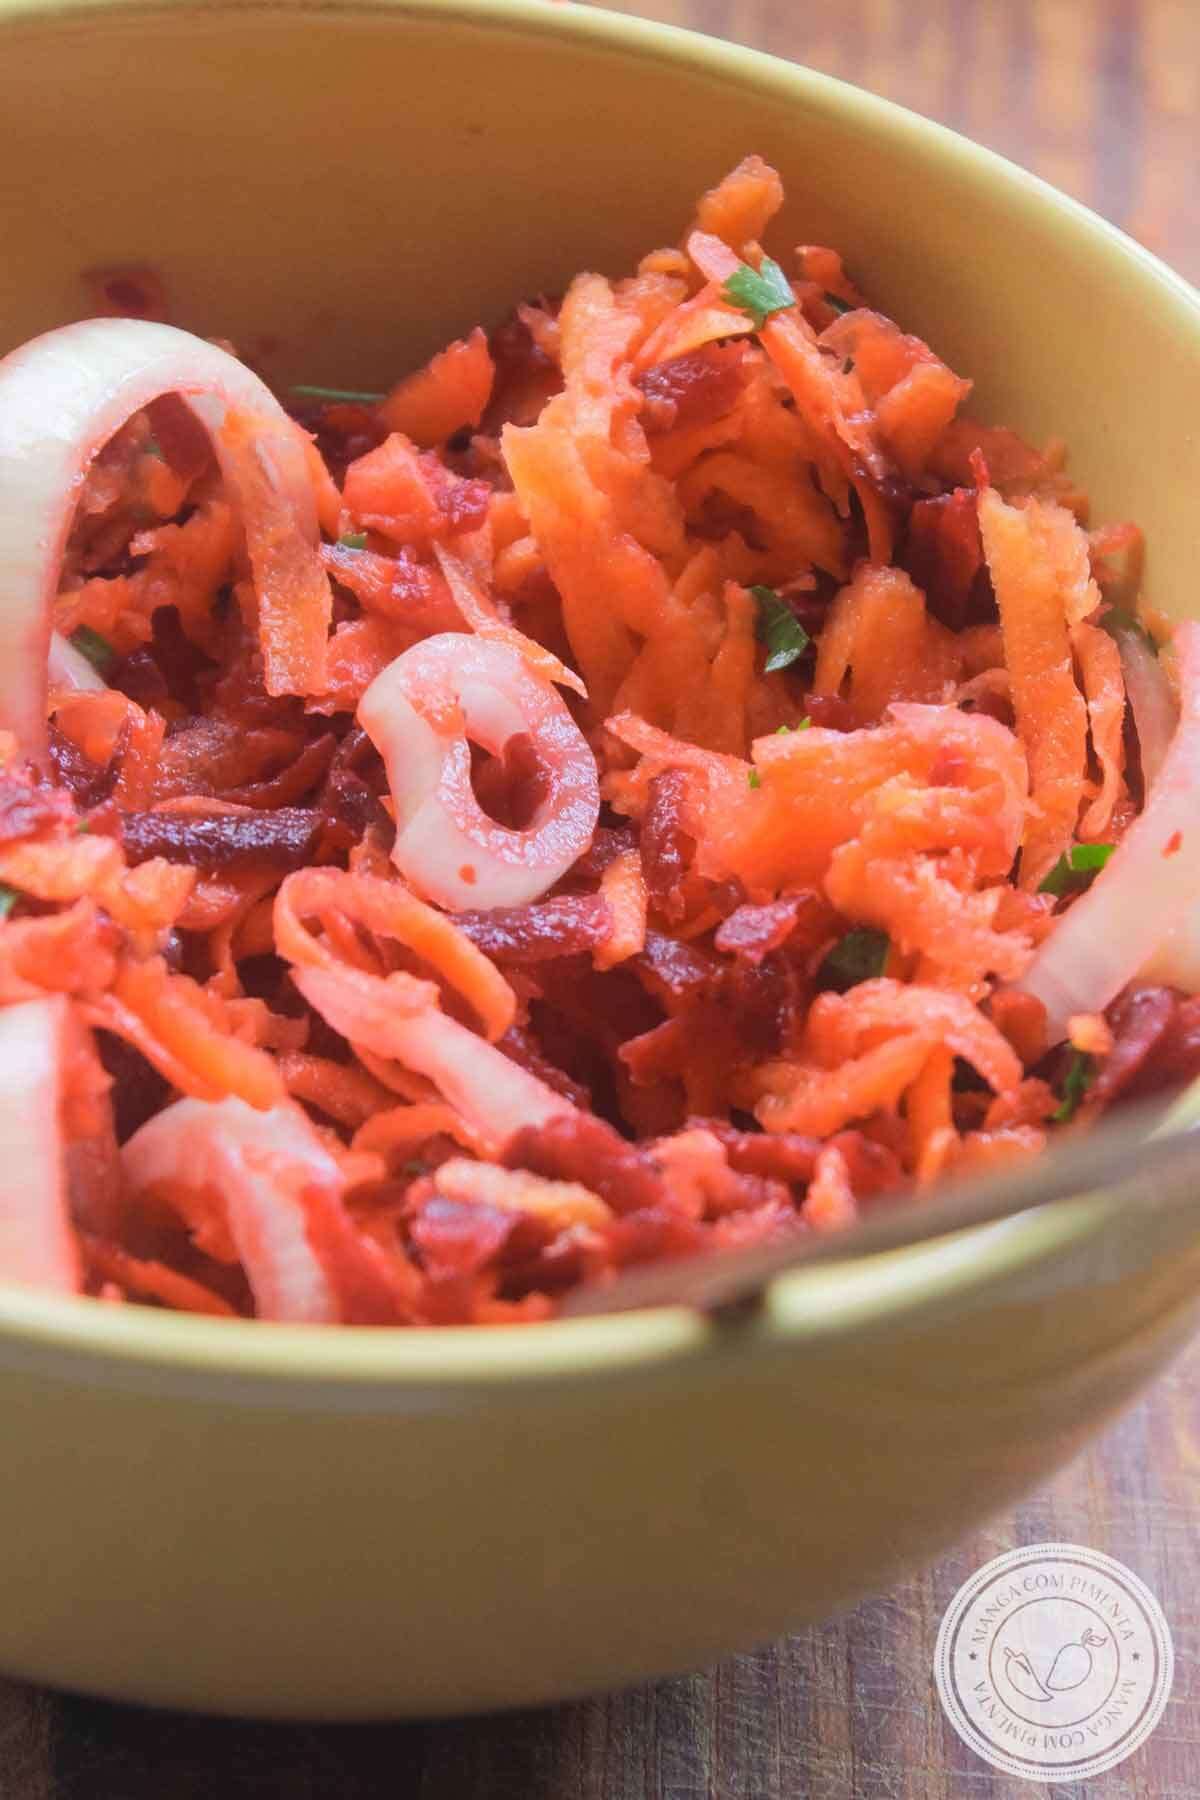 Receita Salada de Beterraba com Cenoura - nutritivo e delicioso para quem faz reeducação alimentar!